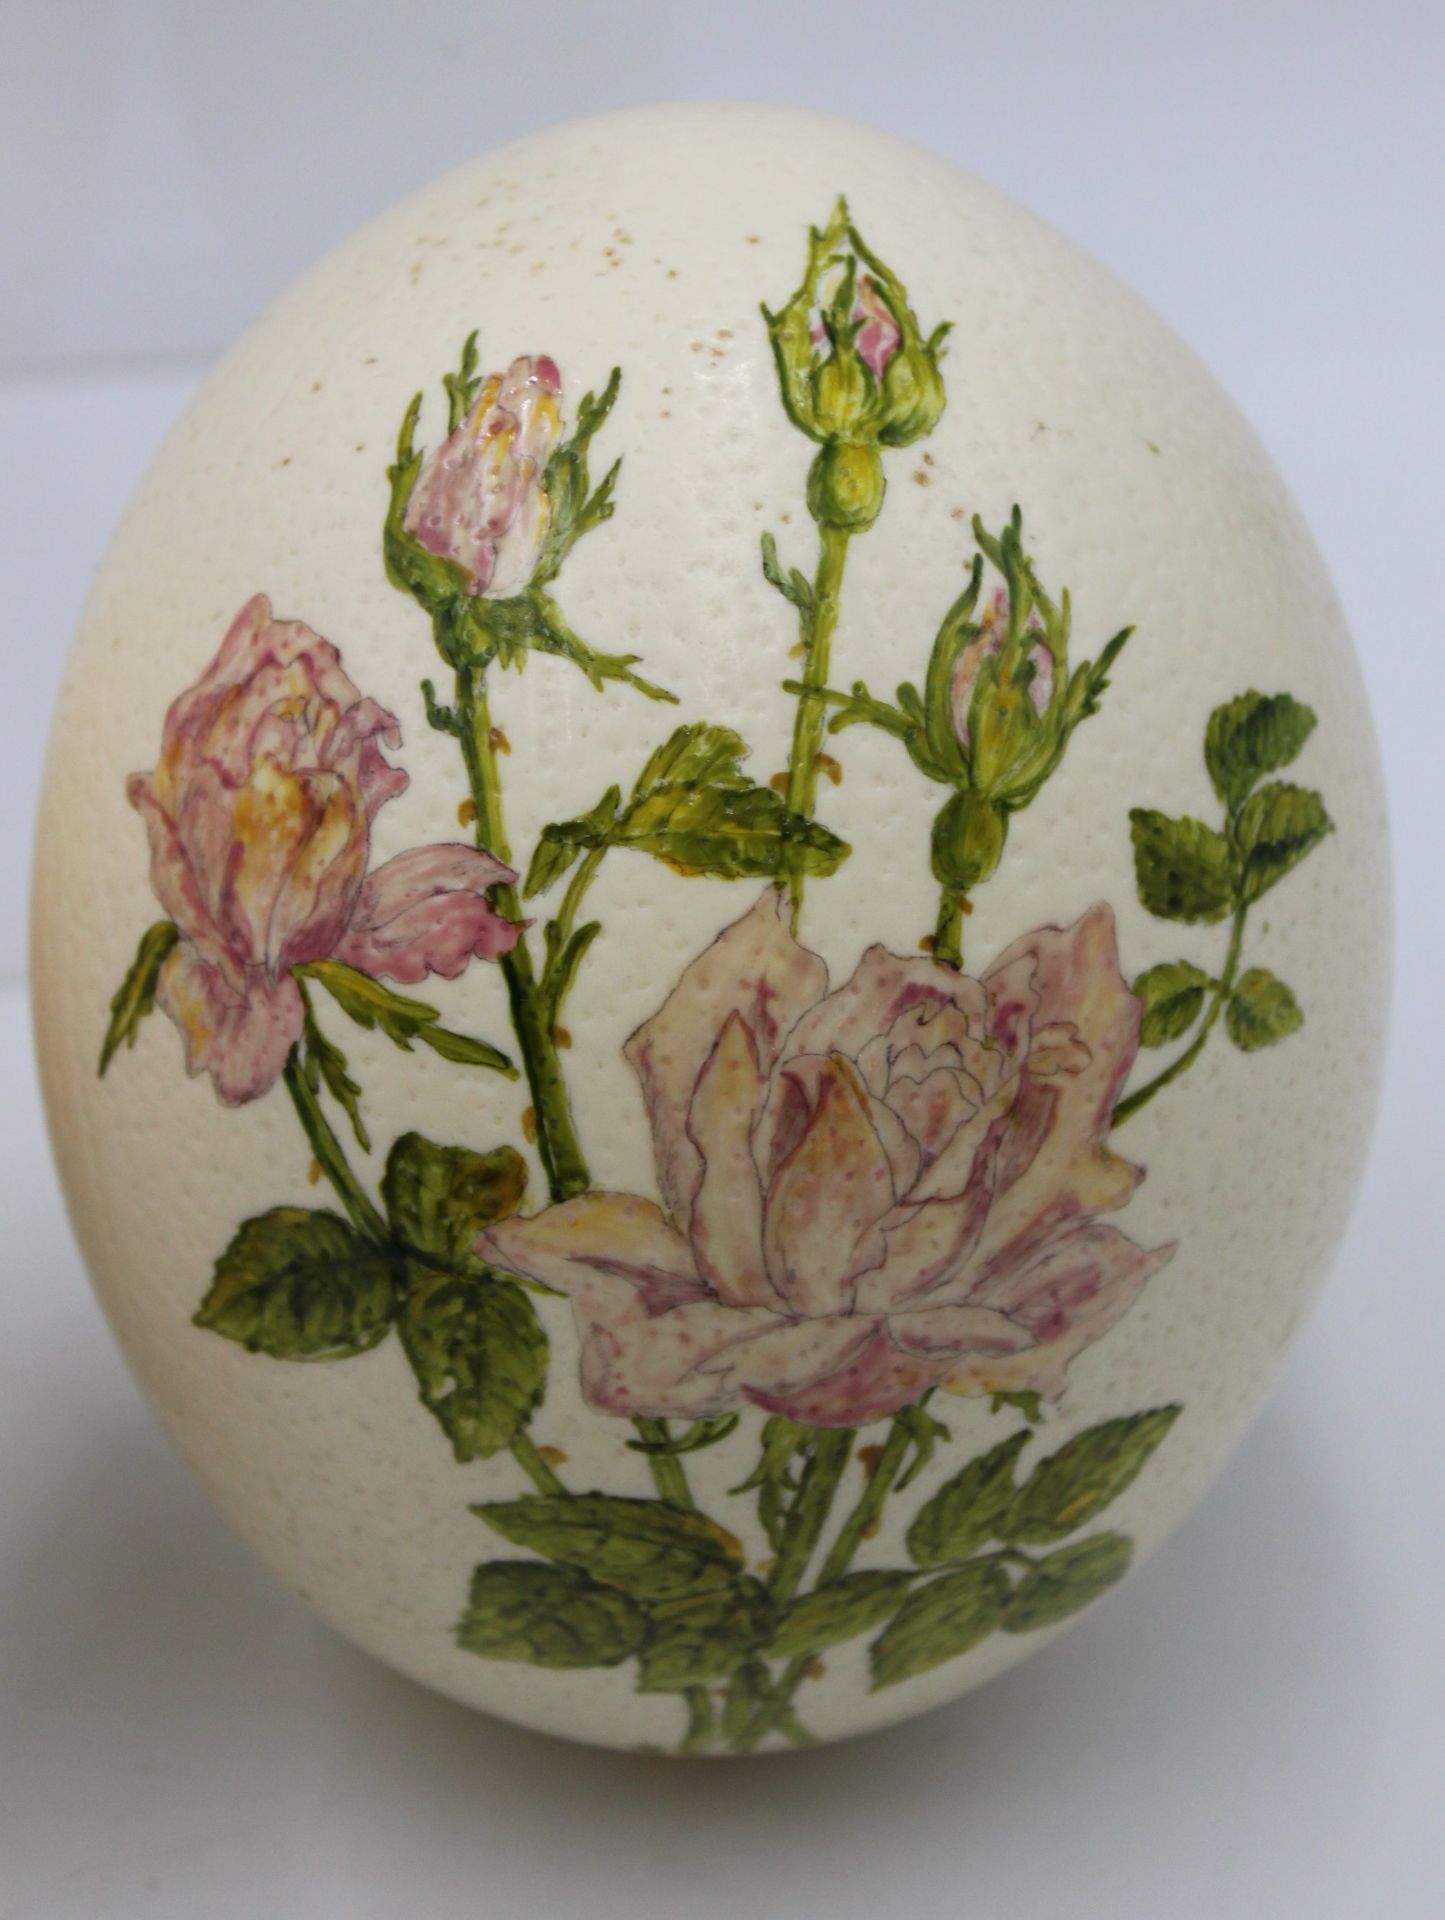 3x floral bemalte Straussen-Eier, ca. H-16cm. - Bild 4 aus 5